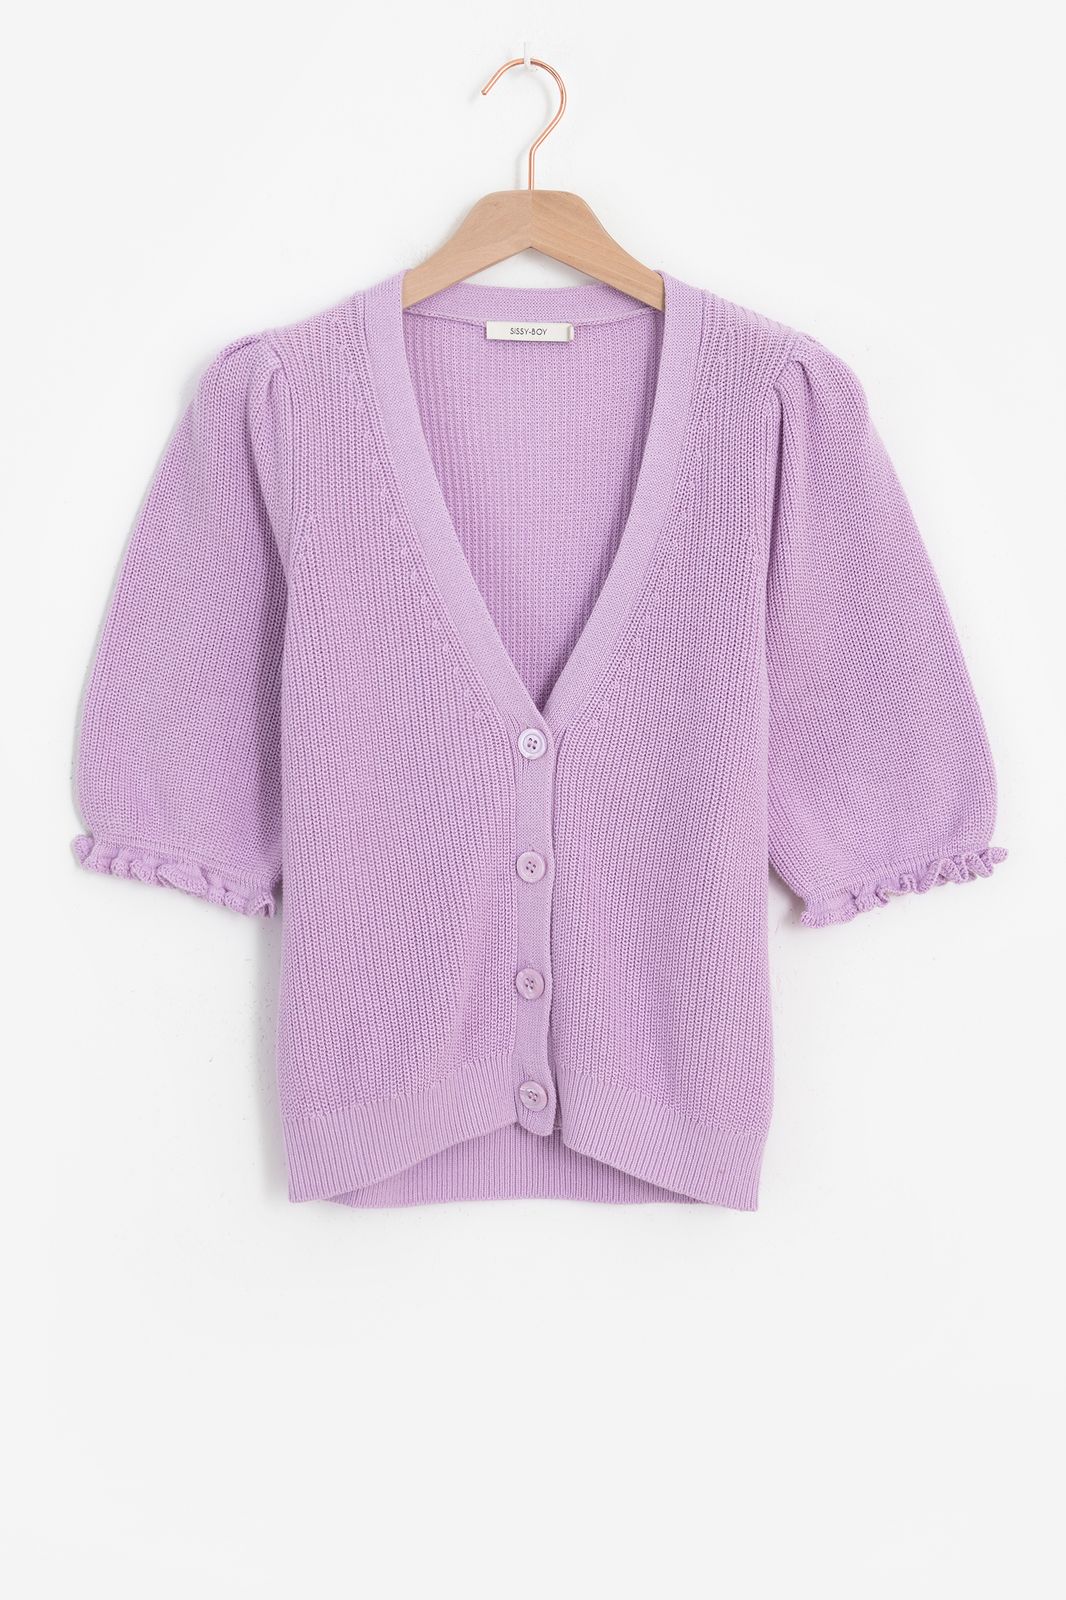 Gilet tricoté avec volants - violet